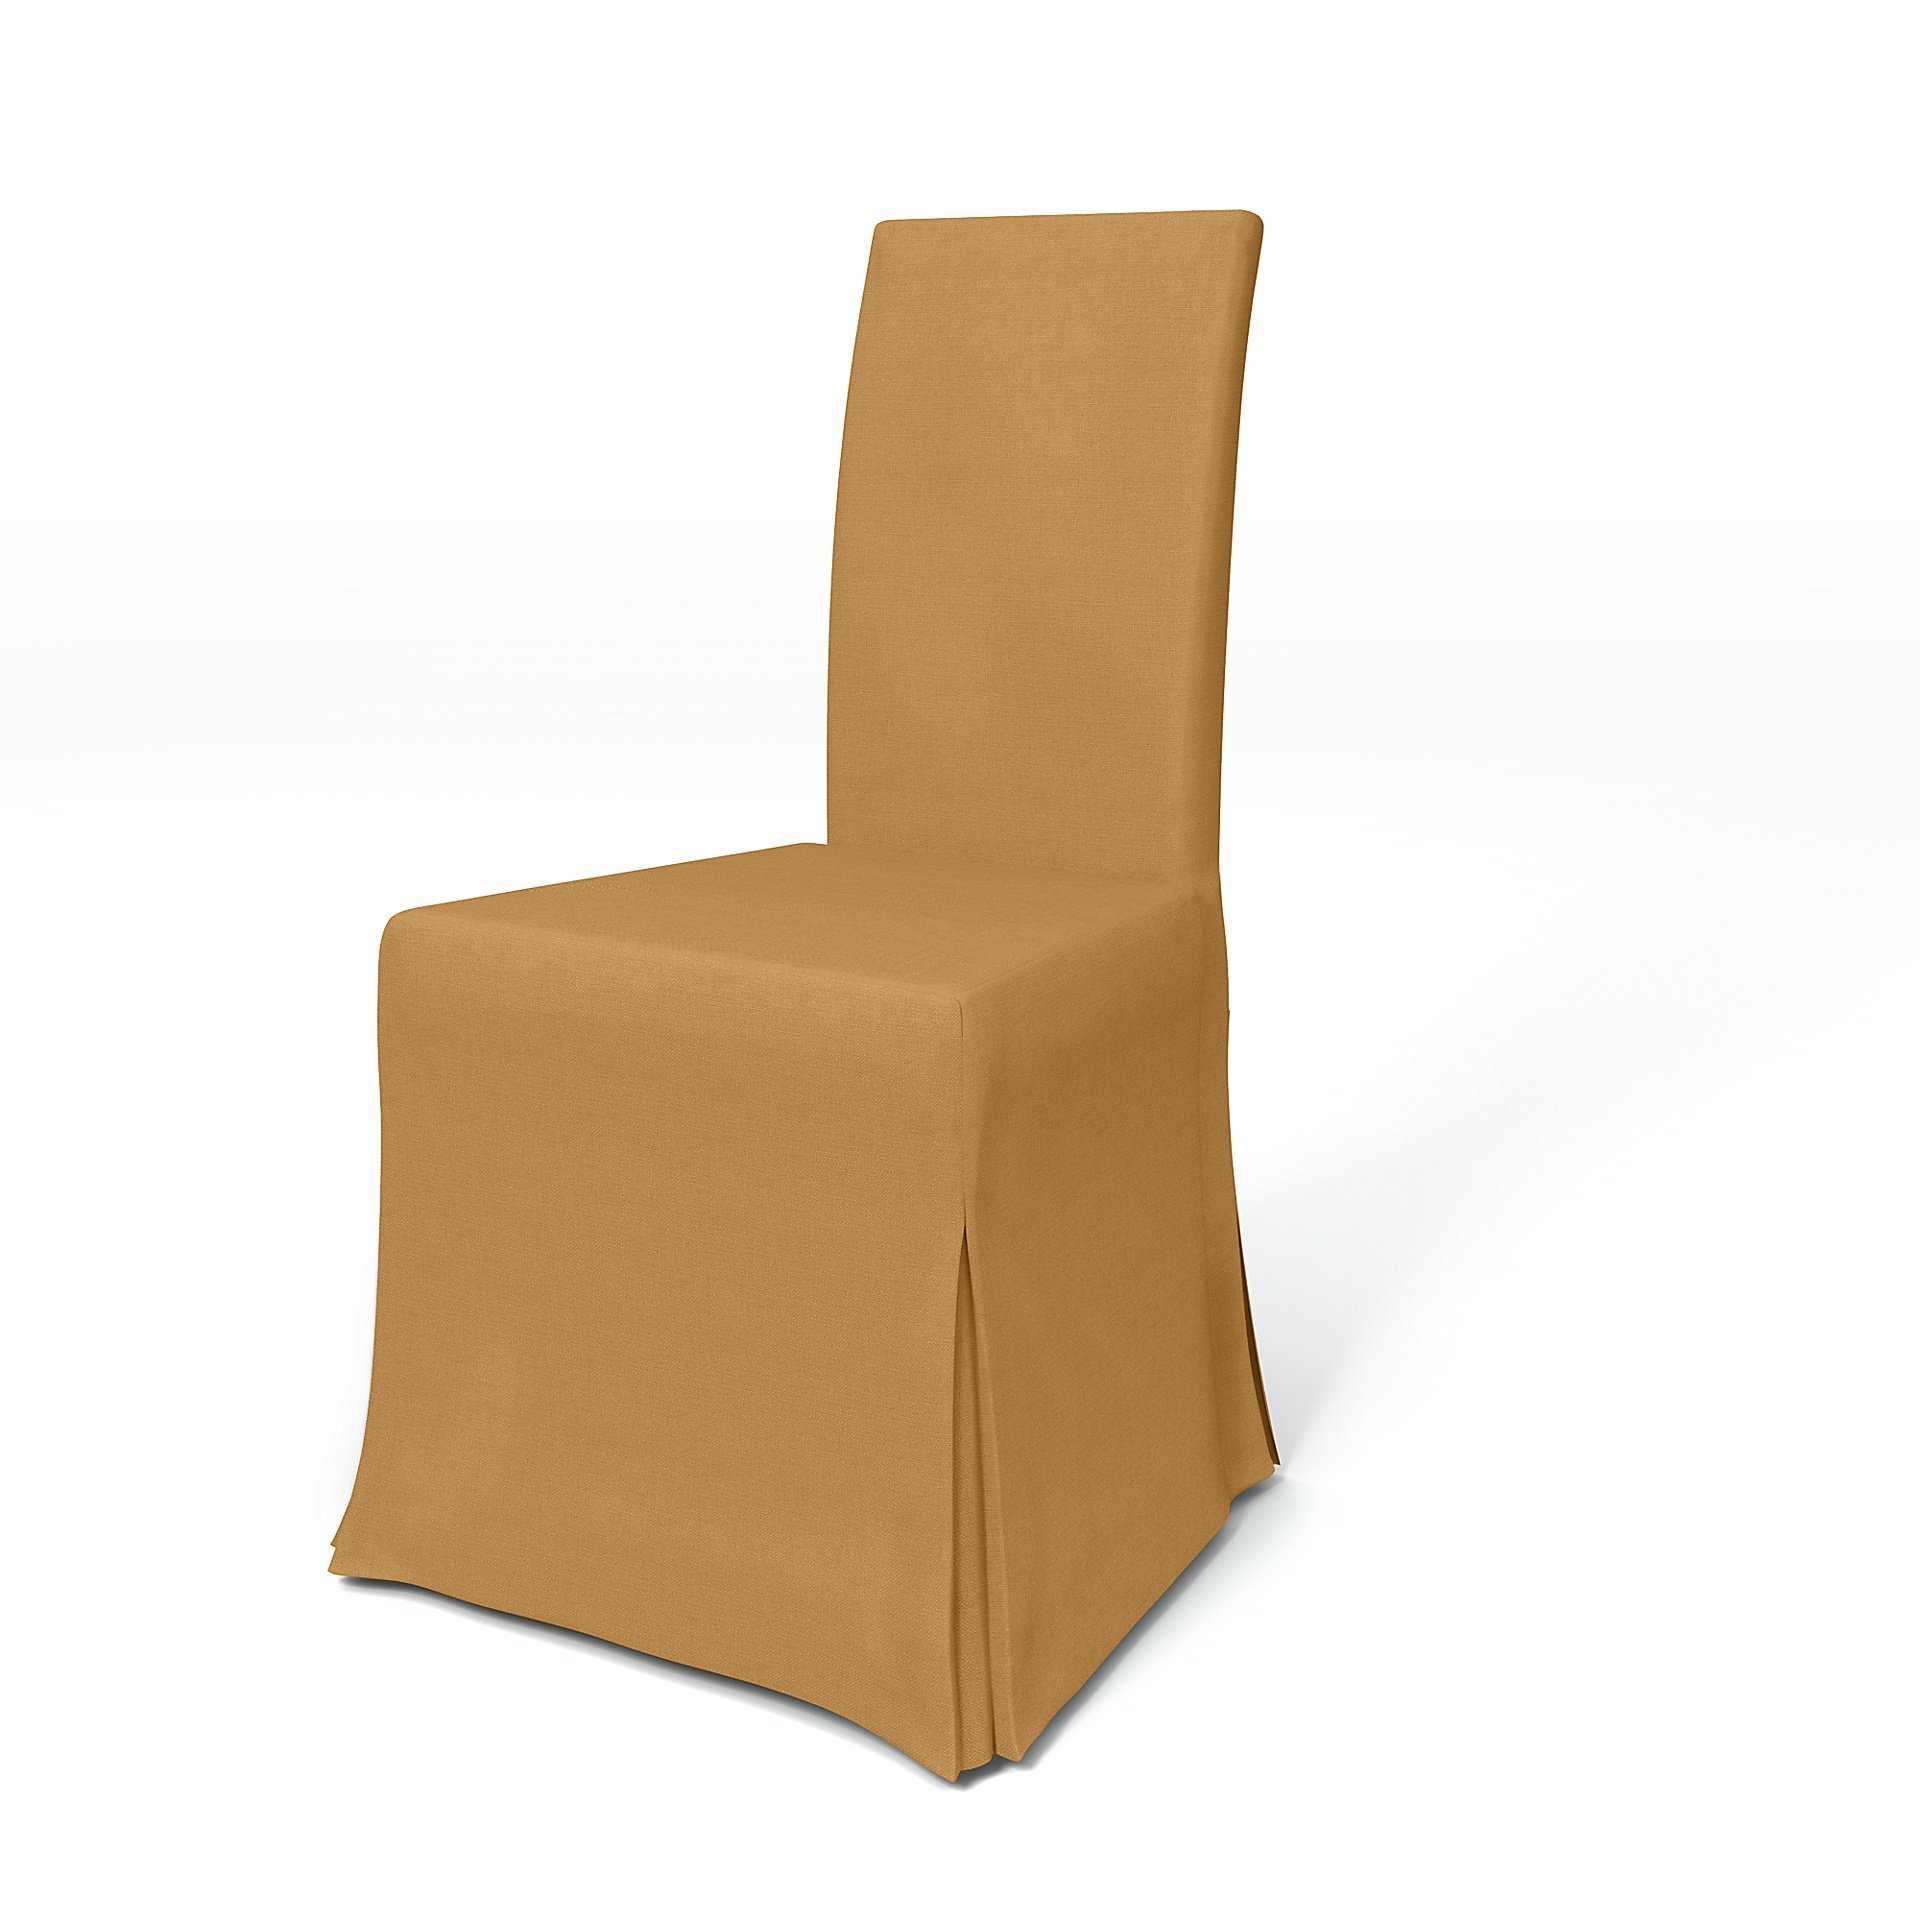 IKEA - Harry Dining Chair Cover, Mustard, Linen - Bemz